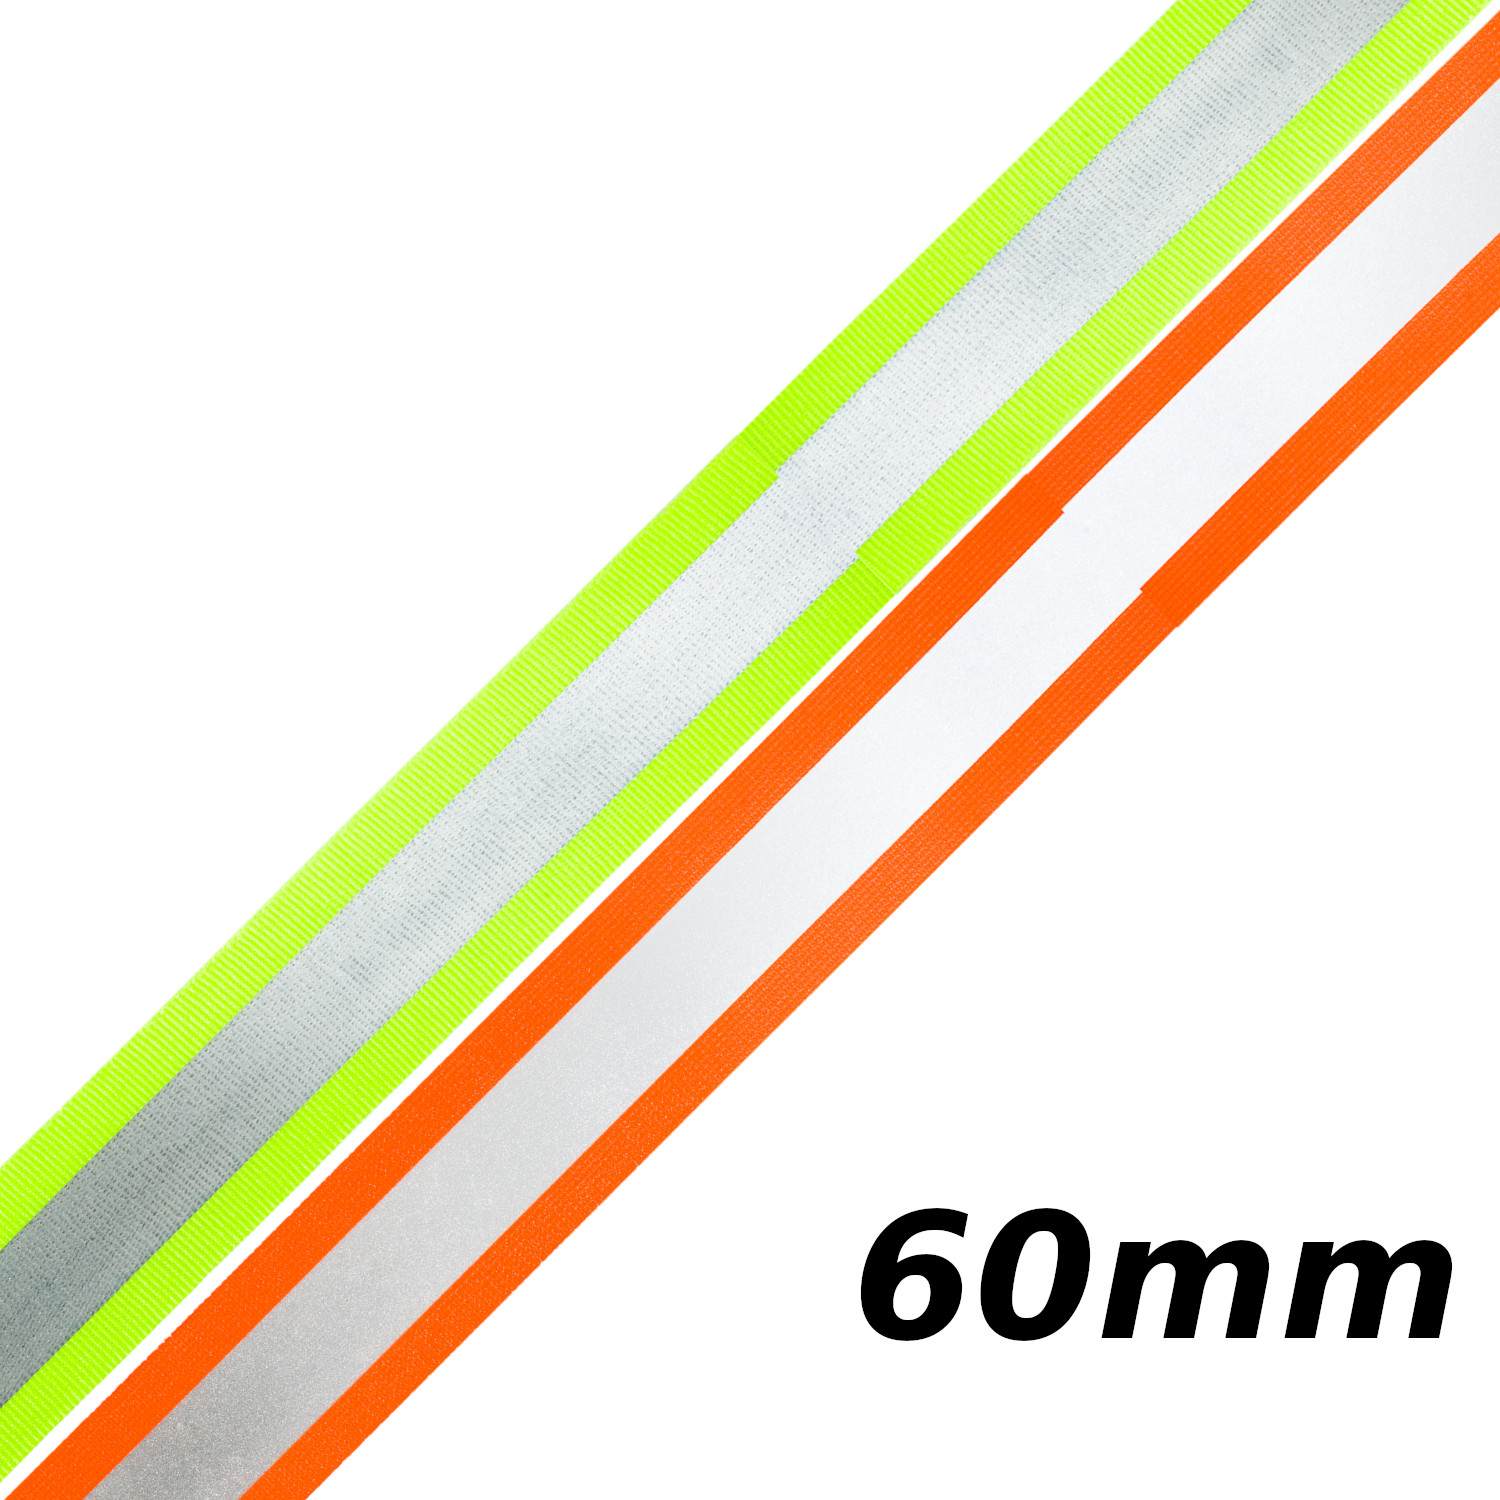 Reflektorband 60mm breit in 2 Farben